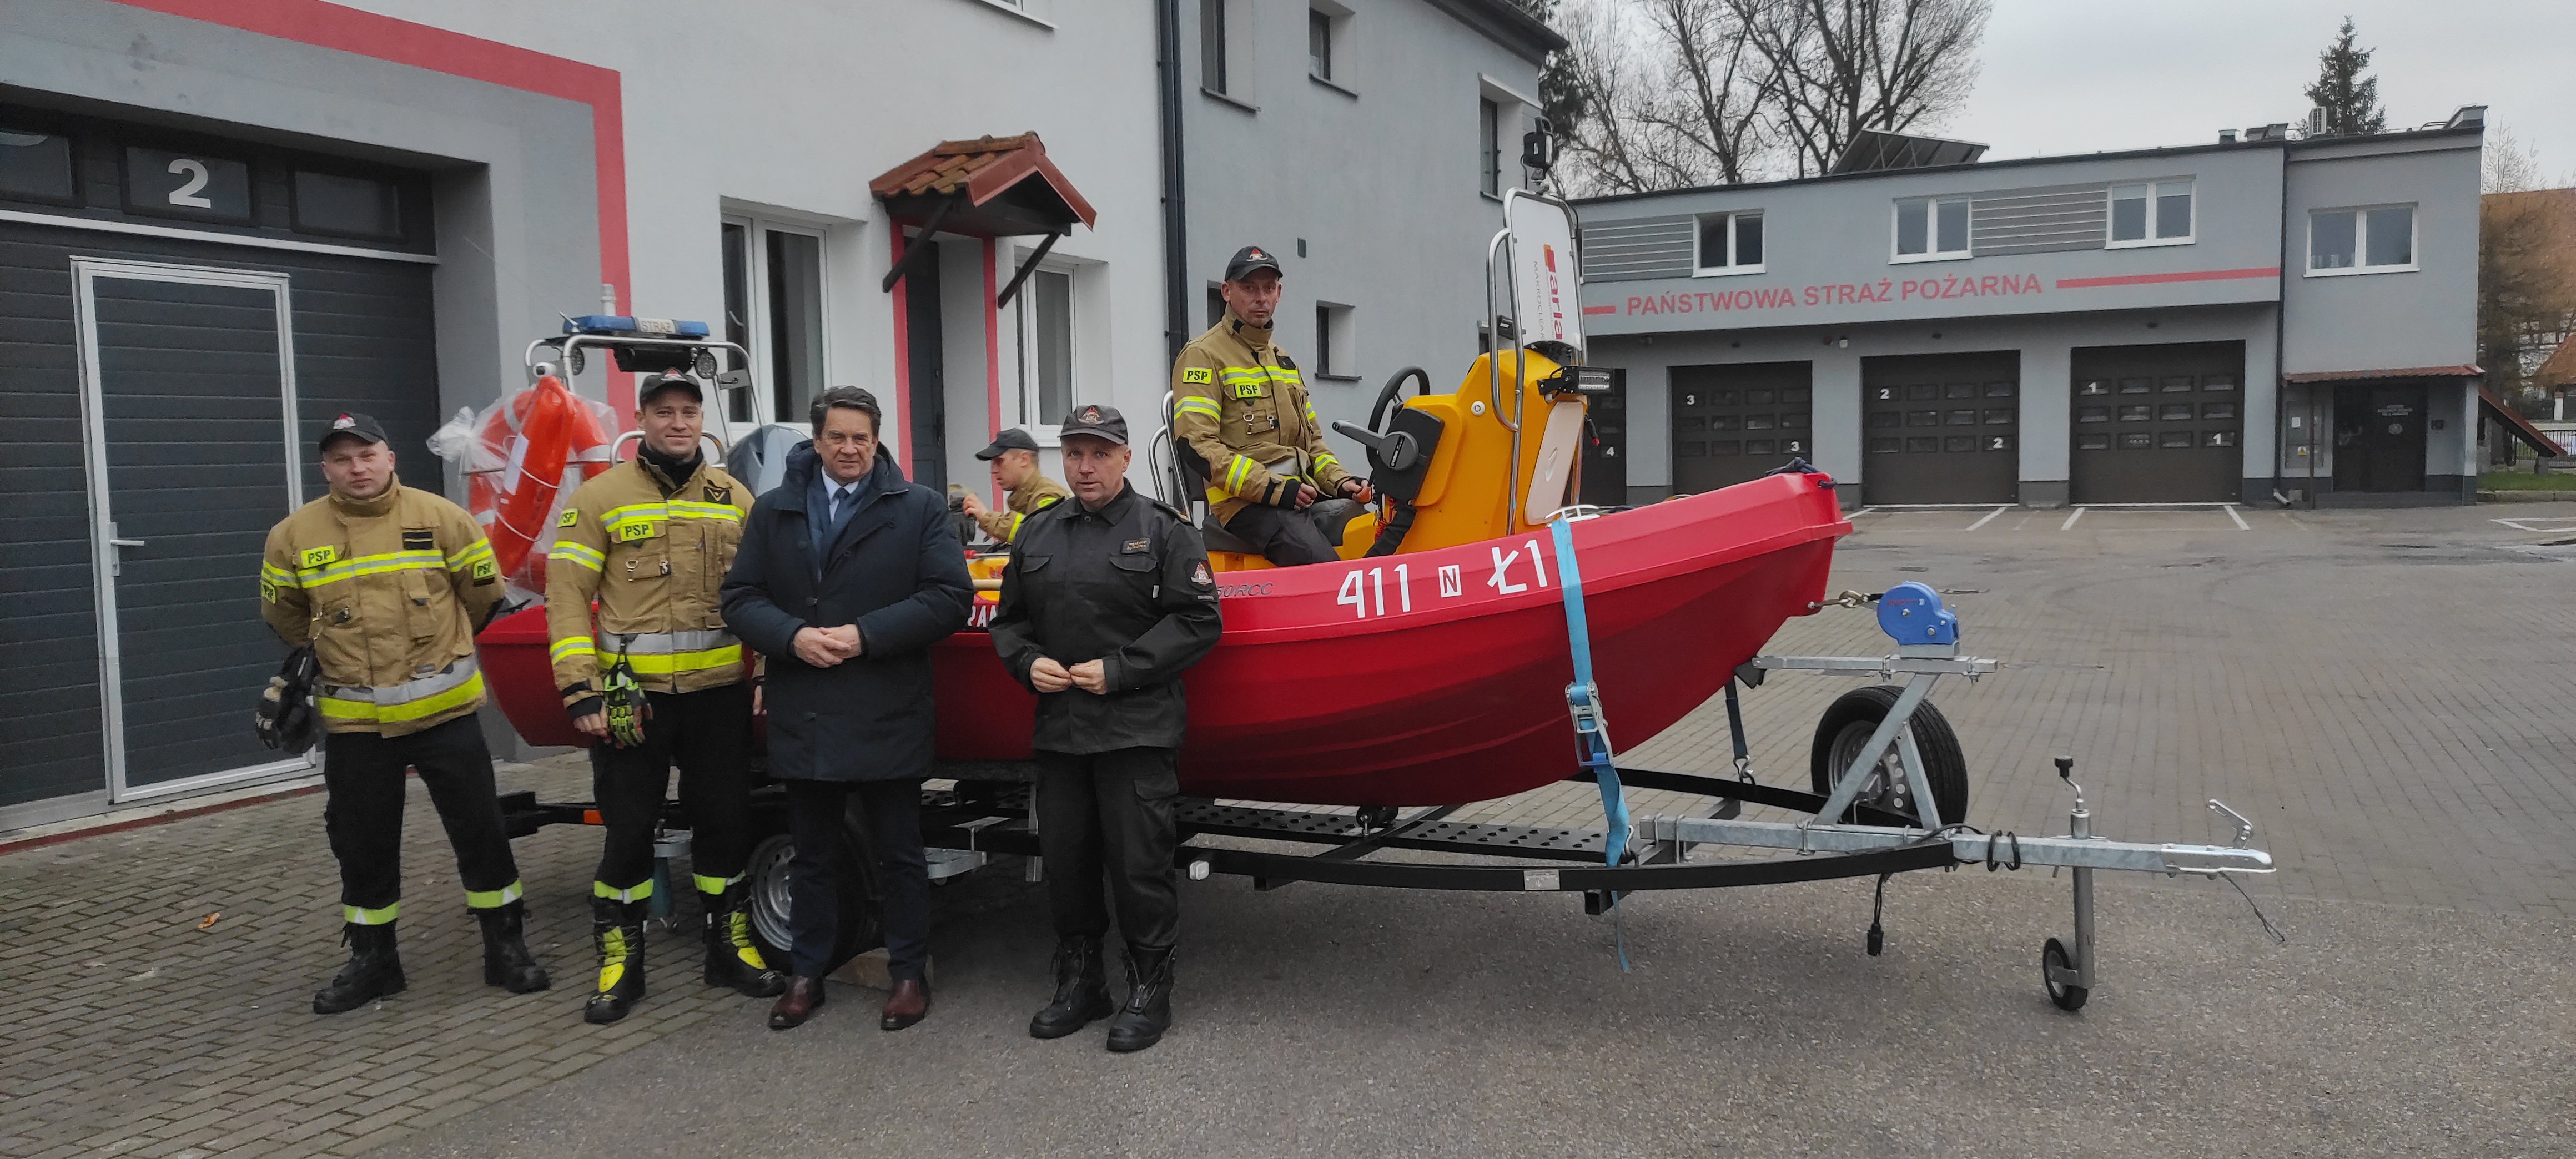 Nowa łódź trafiła do braniewskich strażaków.